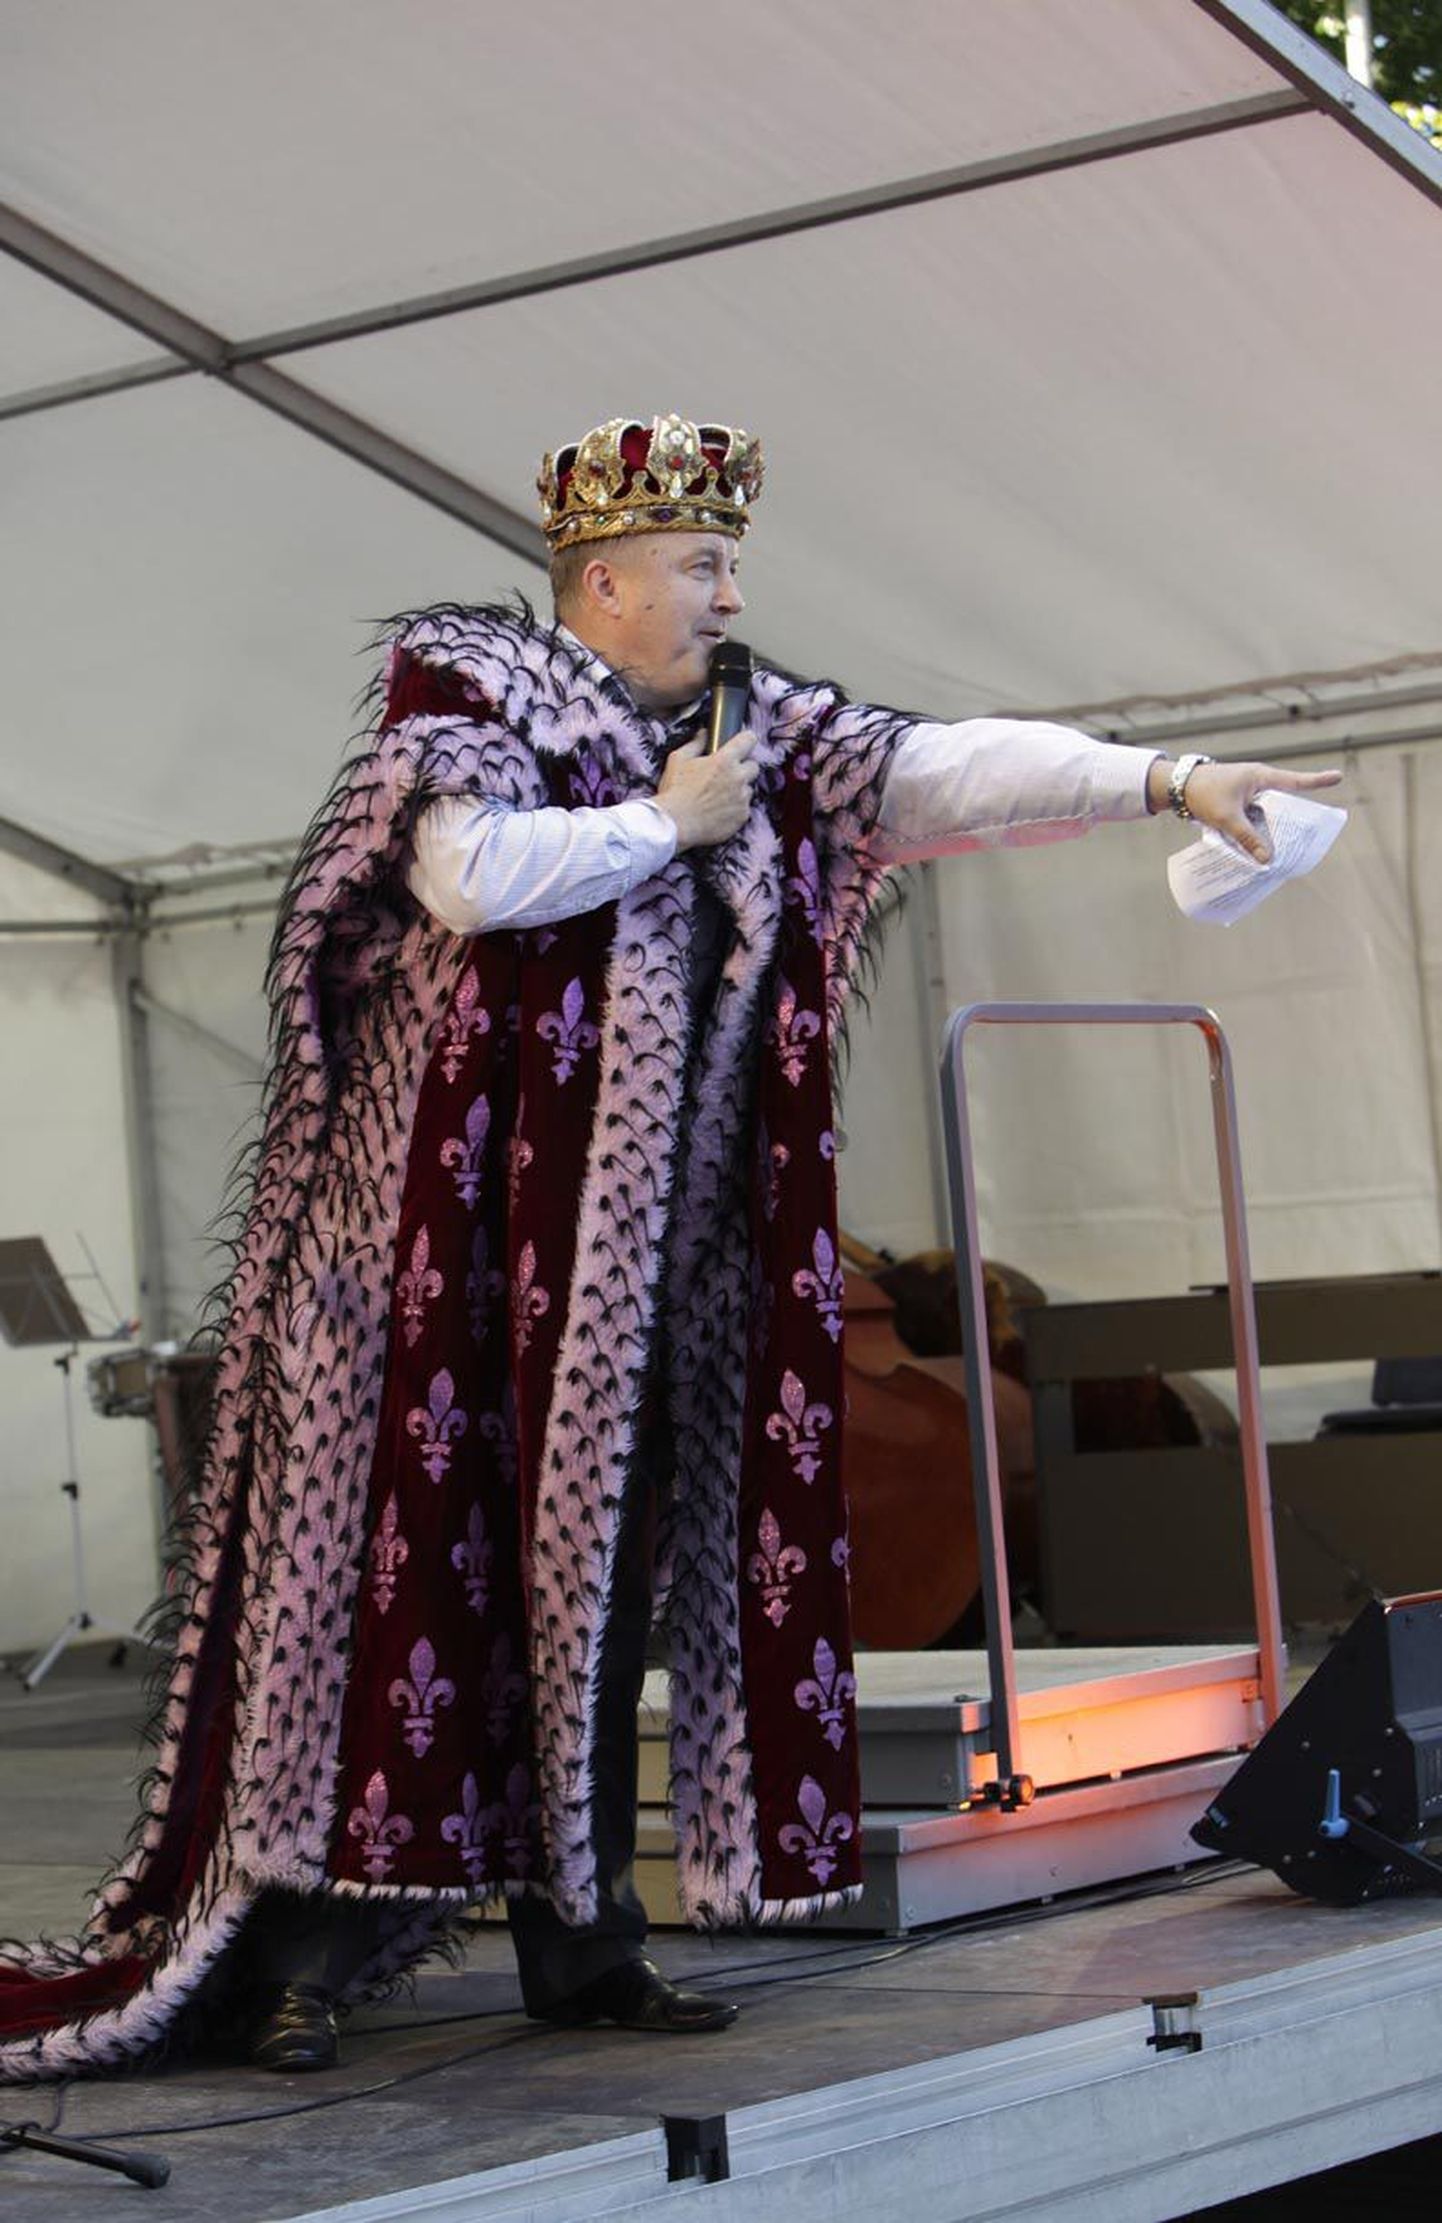 Estonia juht Aivar Mäe peab ooperiteatri rajamise sidumist linnahalliga liiga värskeks, et sellest täpsemalt kõnelda.